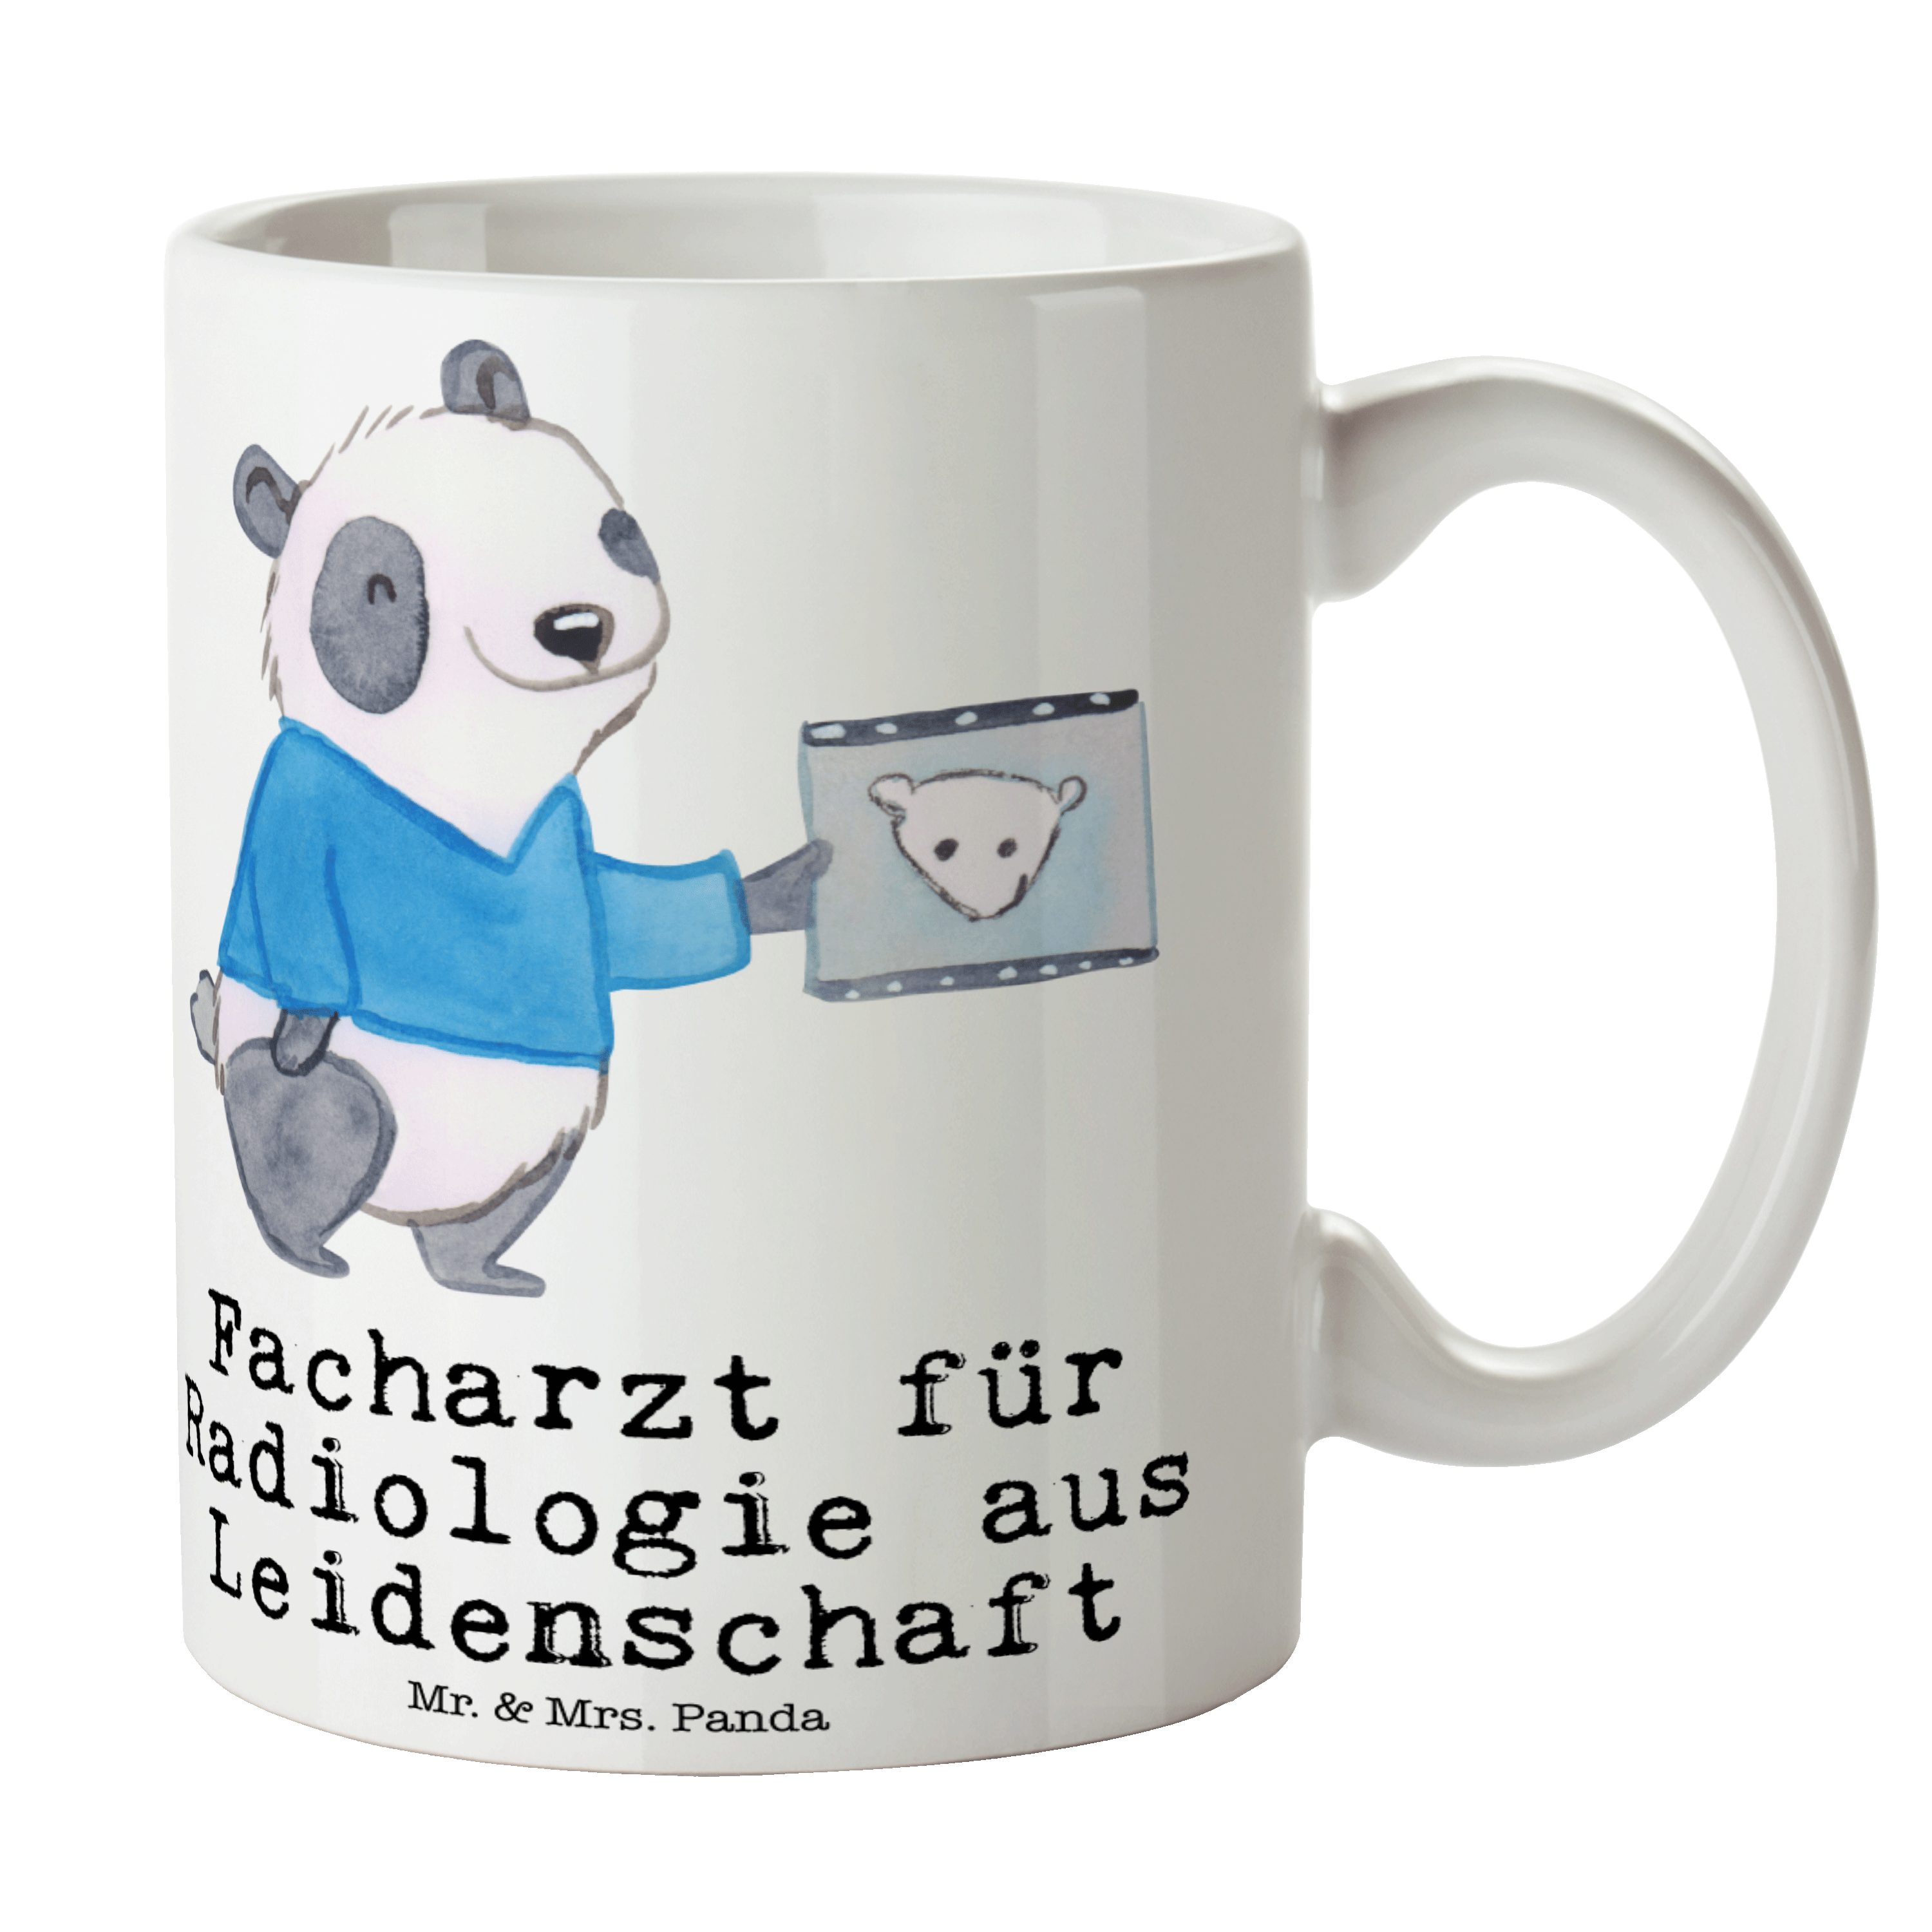 Mr. & Mrs. Panda Tasse für Facharzt - Geschenk, aus Arbeitsko, Leidenschaft Weiß Keramik - Radiologie